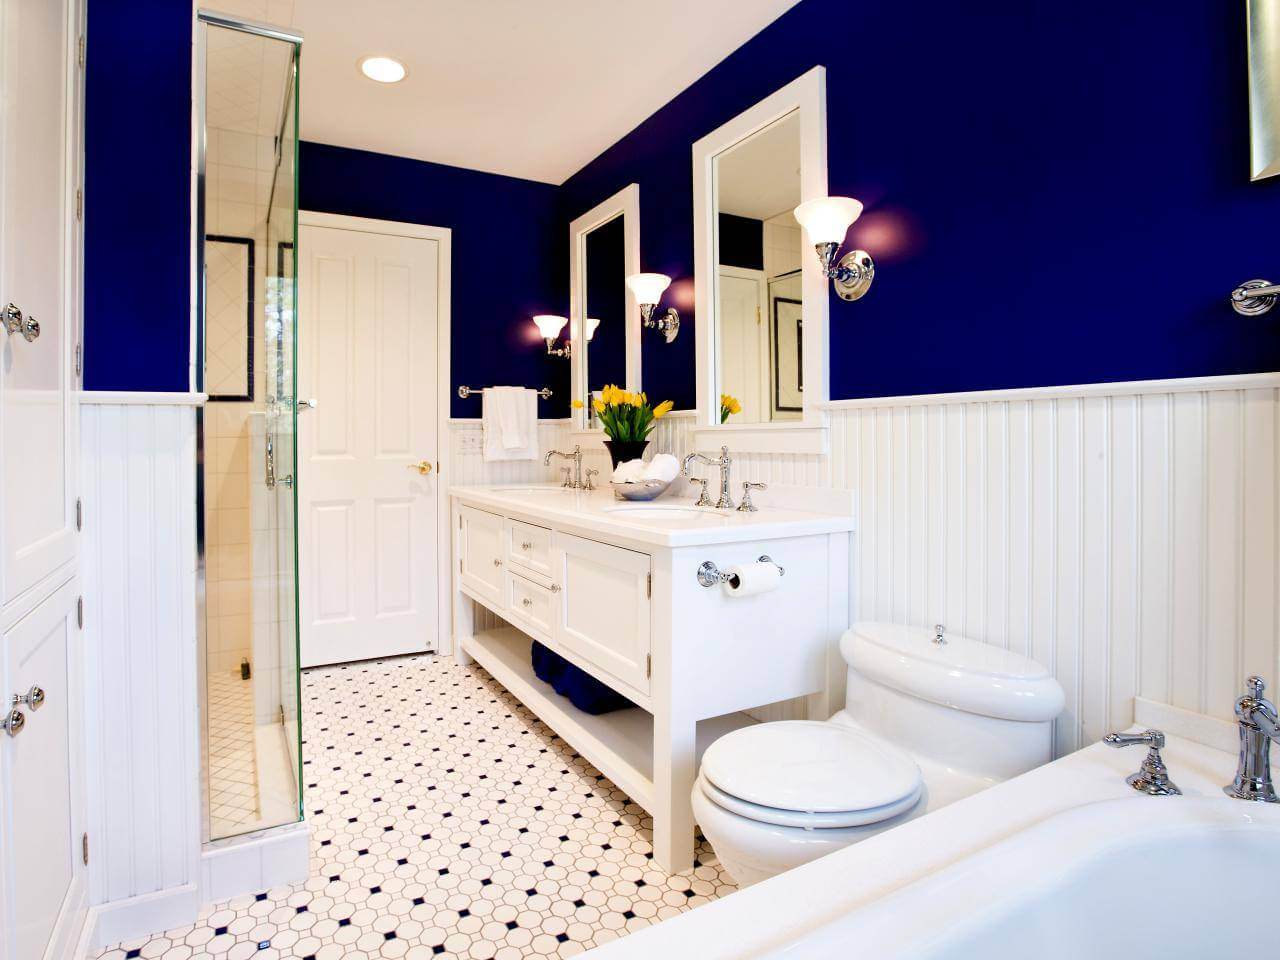 double sink bathroom vanity blue